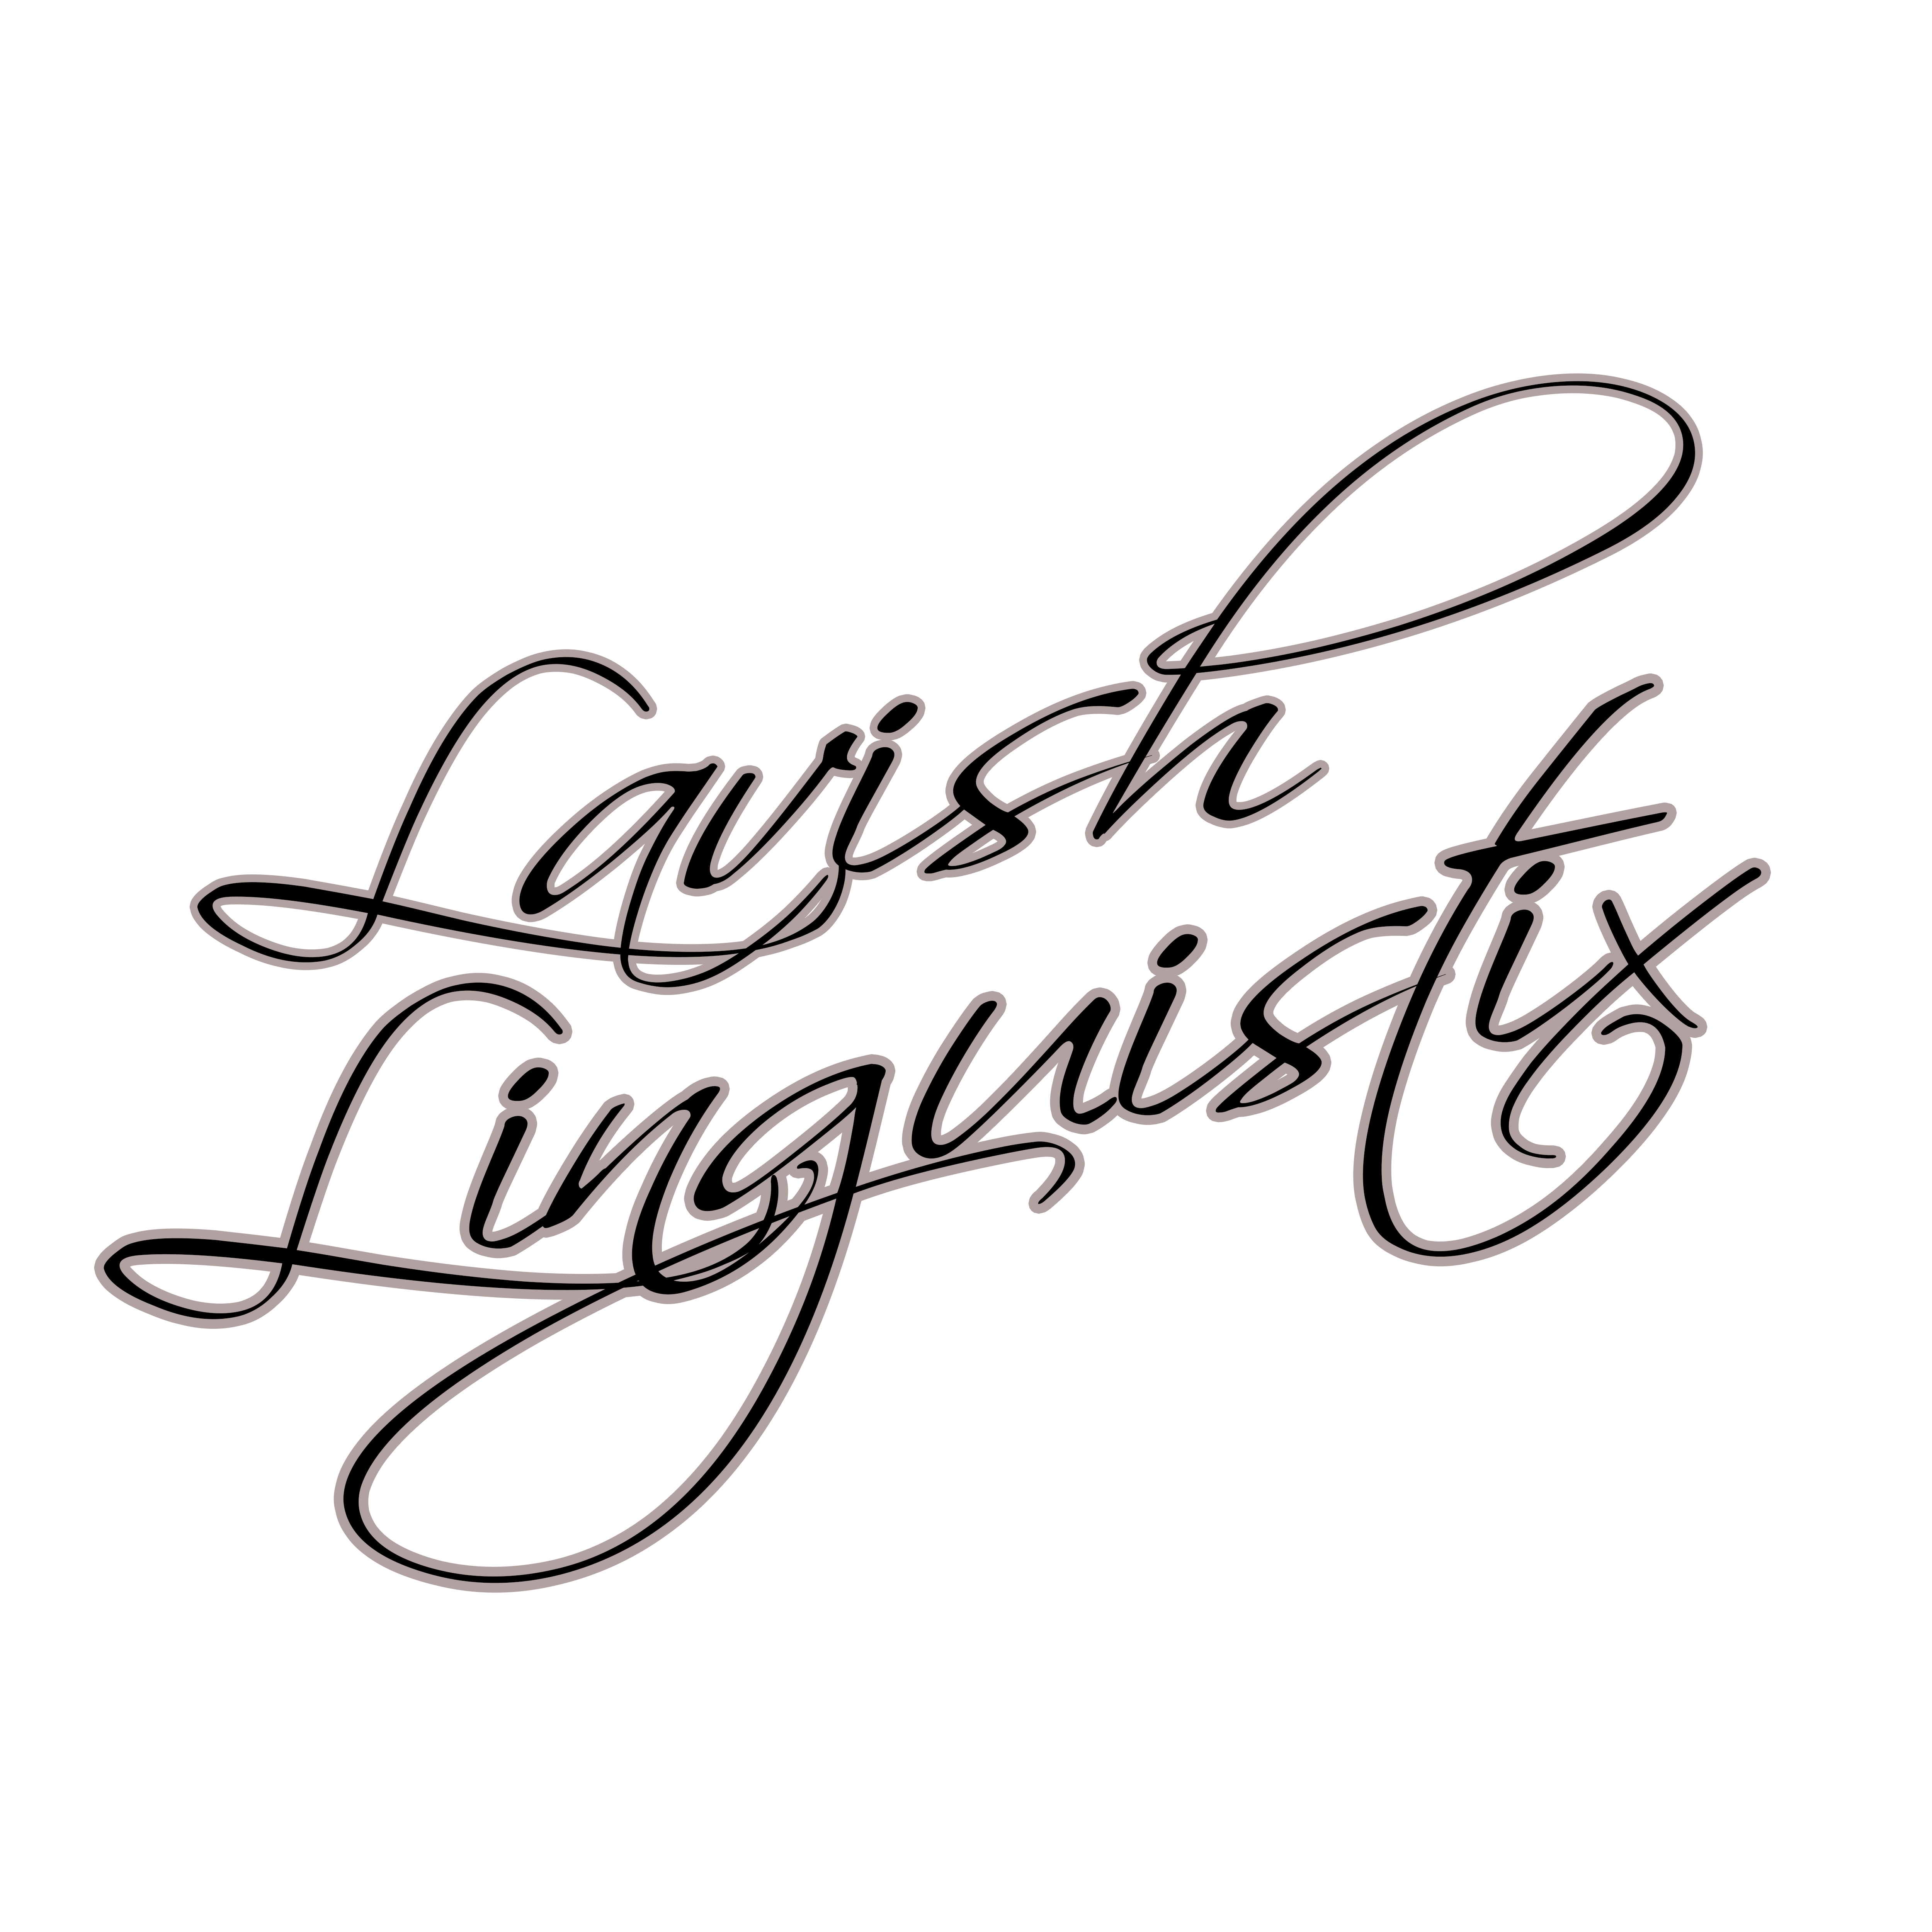 Lavish Linguistix (ASCAP Publisher)